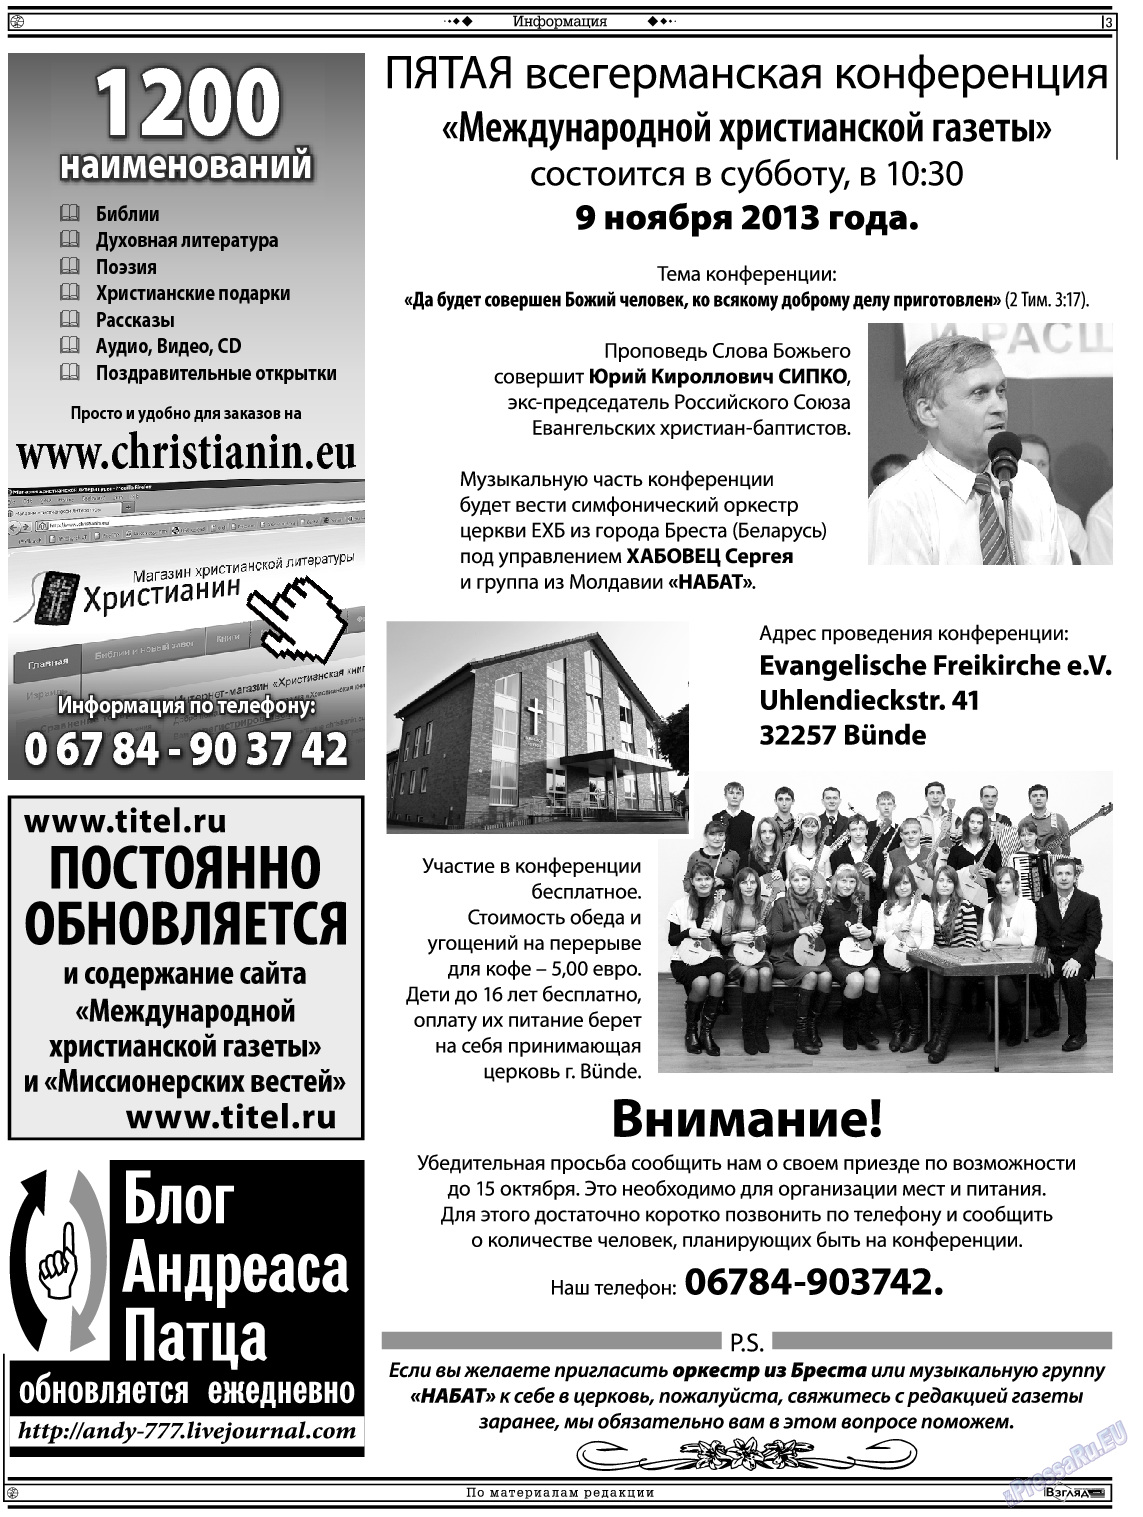 Христианская газета, газета. 2013 №9 стр.17